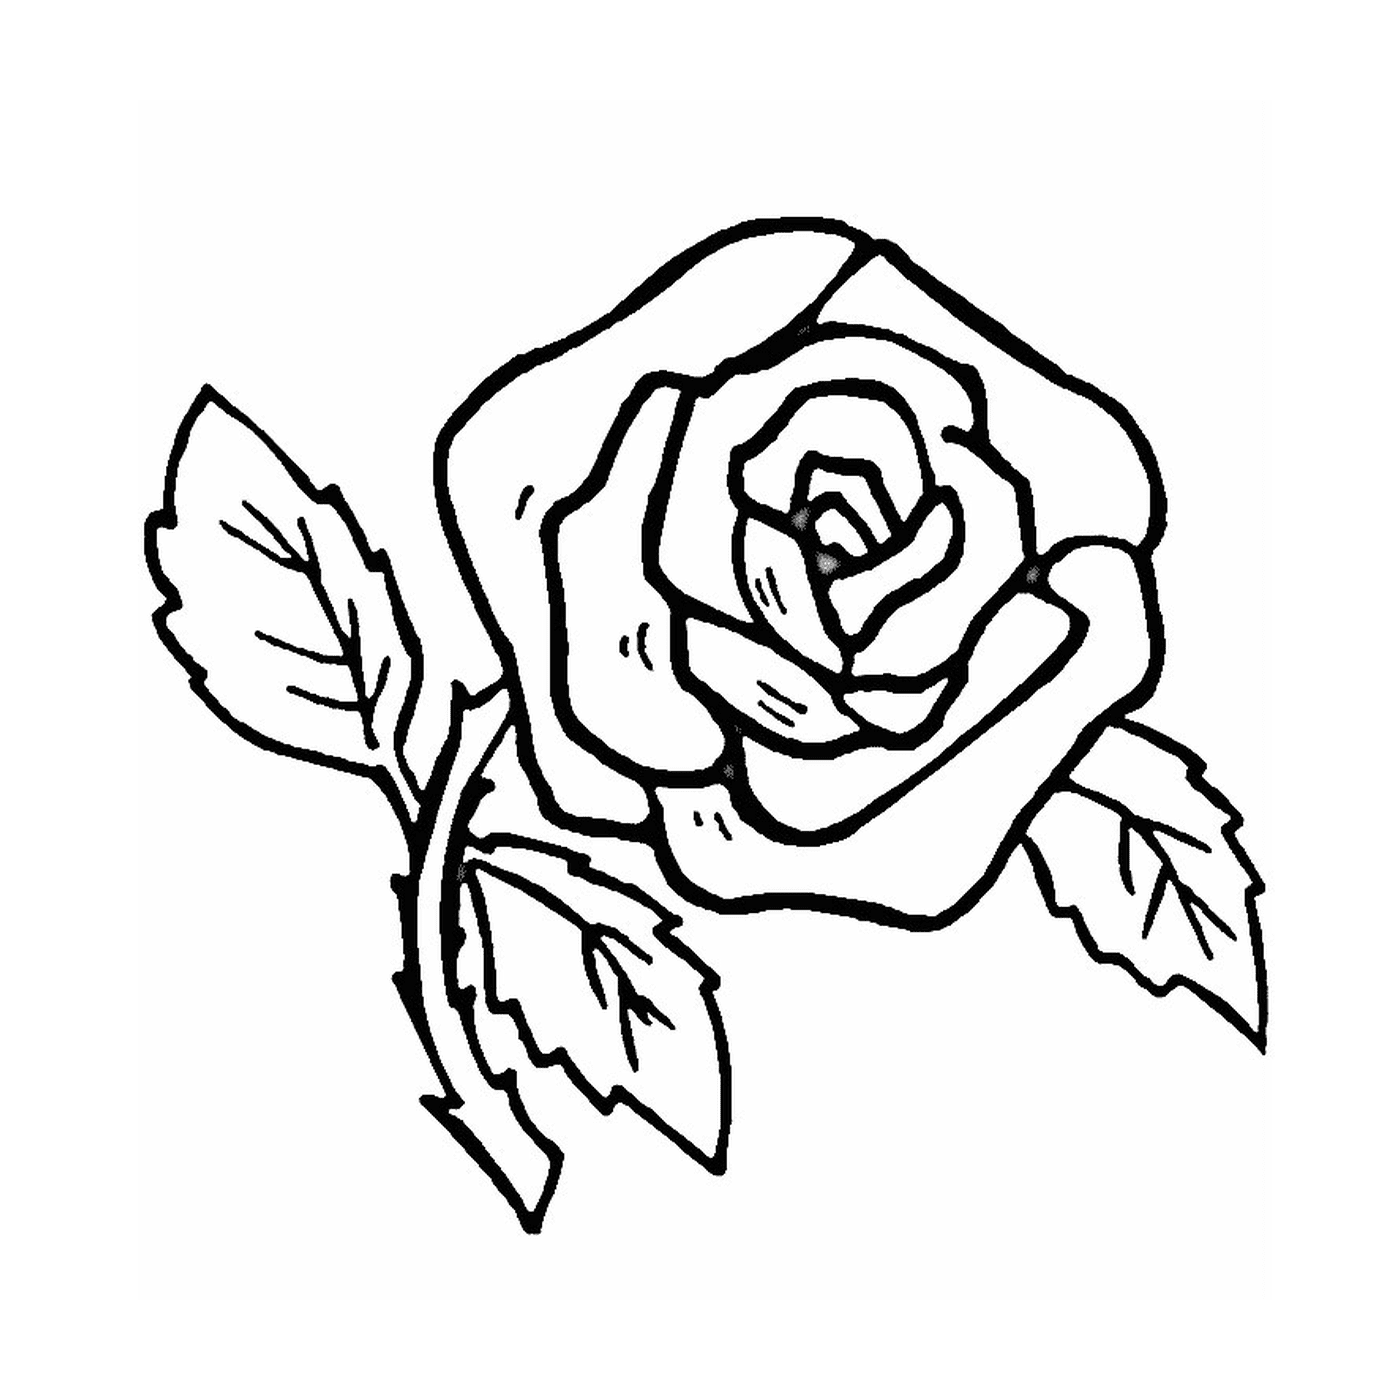  Una rosa sencilla y fácil 